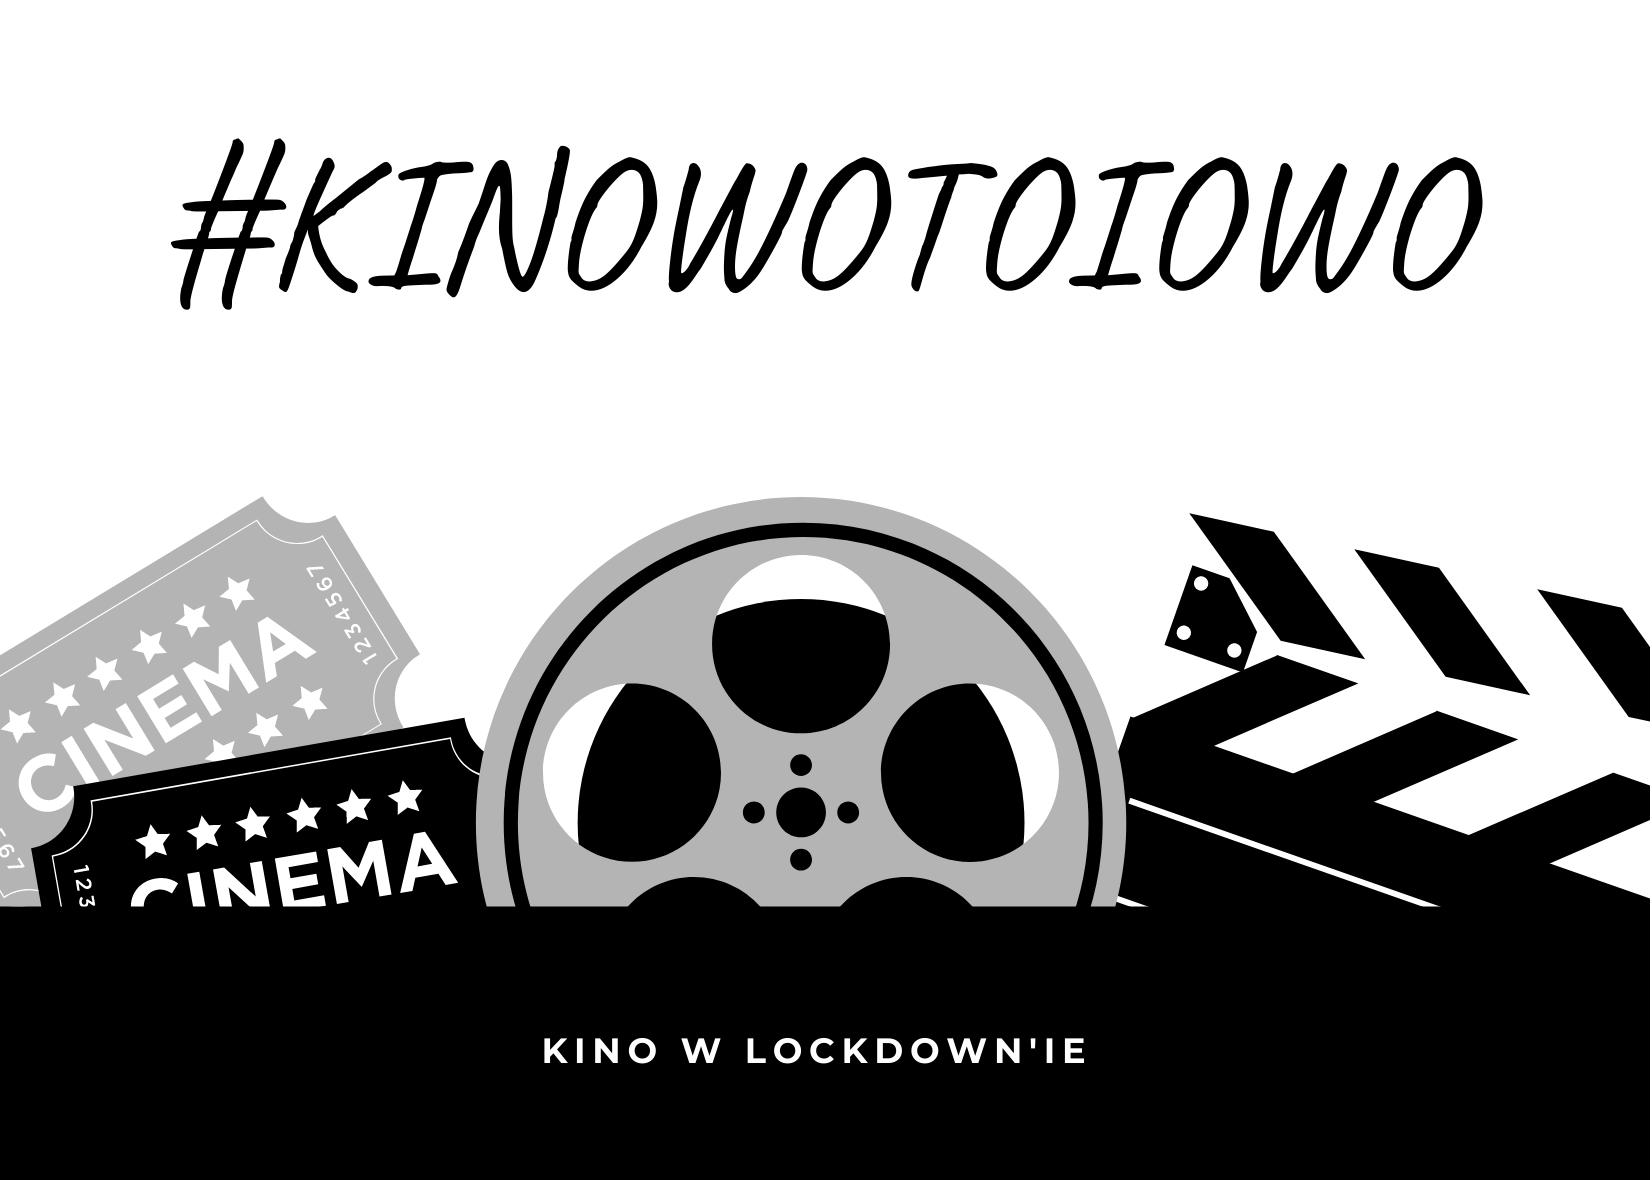 Nie taki on-line straszny #kinowotoiowo /EWOLUCJA EFEKTÓW KOMPUTEROWYCH W FILMIE